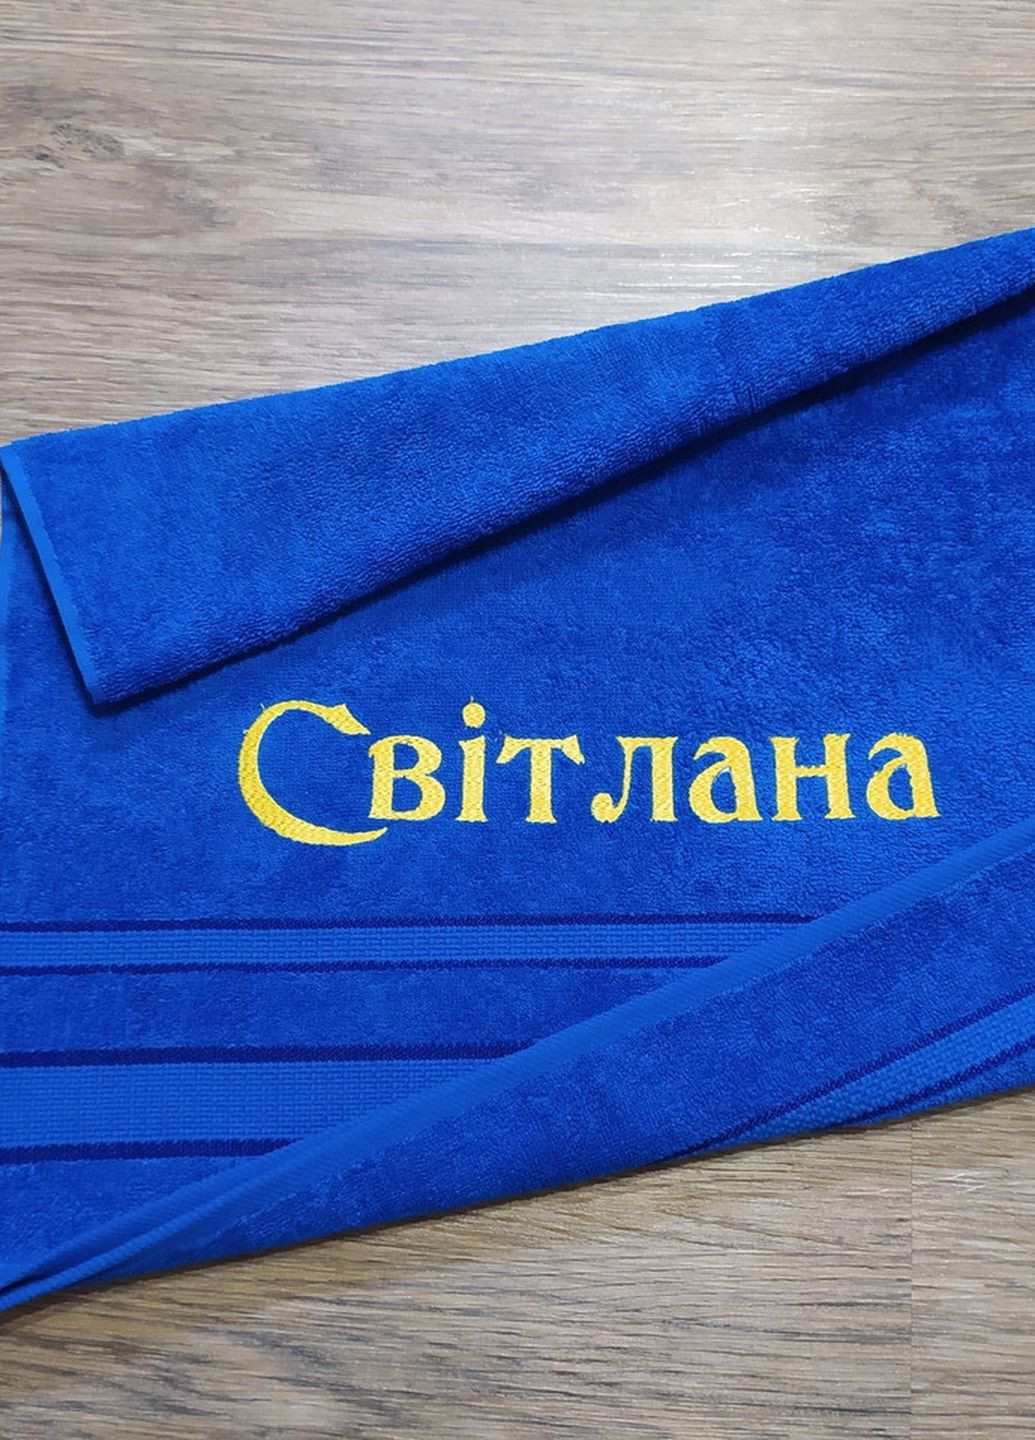 No Brand полотенце с именной вышивкой махровое лицевое 50*90 синий светлана 03915 однотонный синий производство - Украина